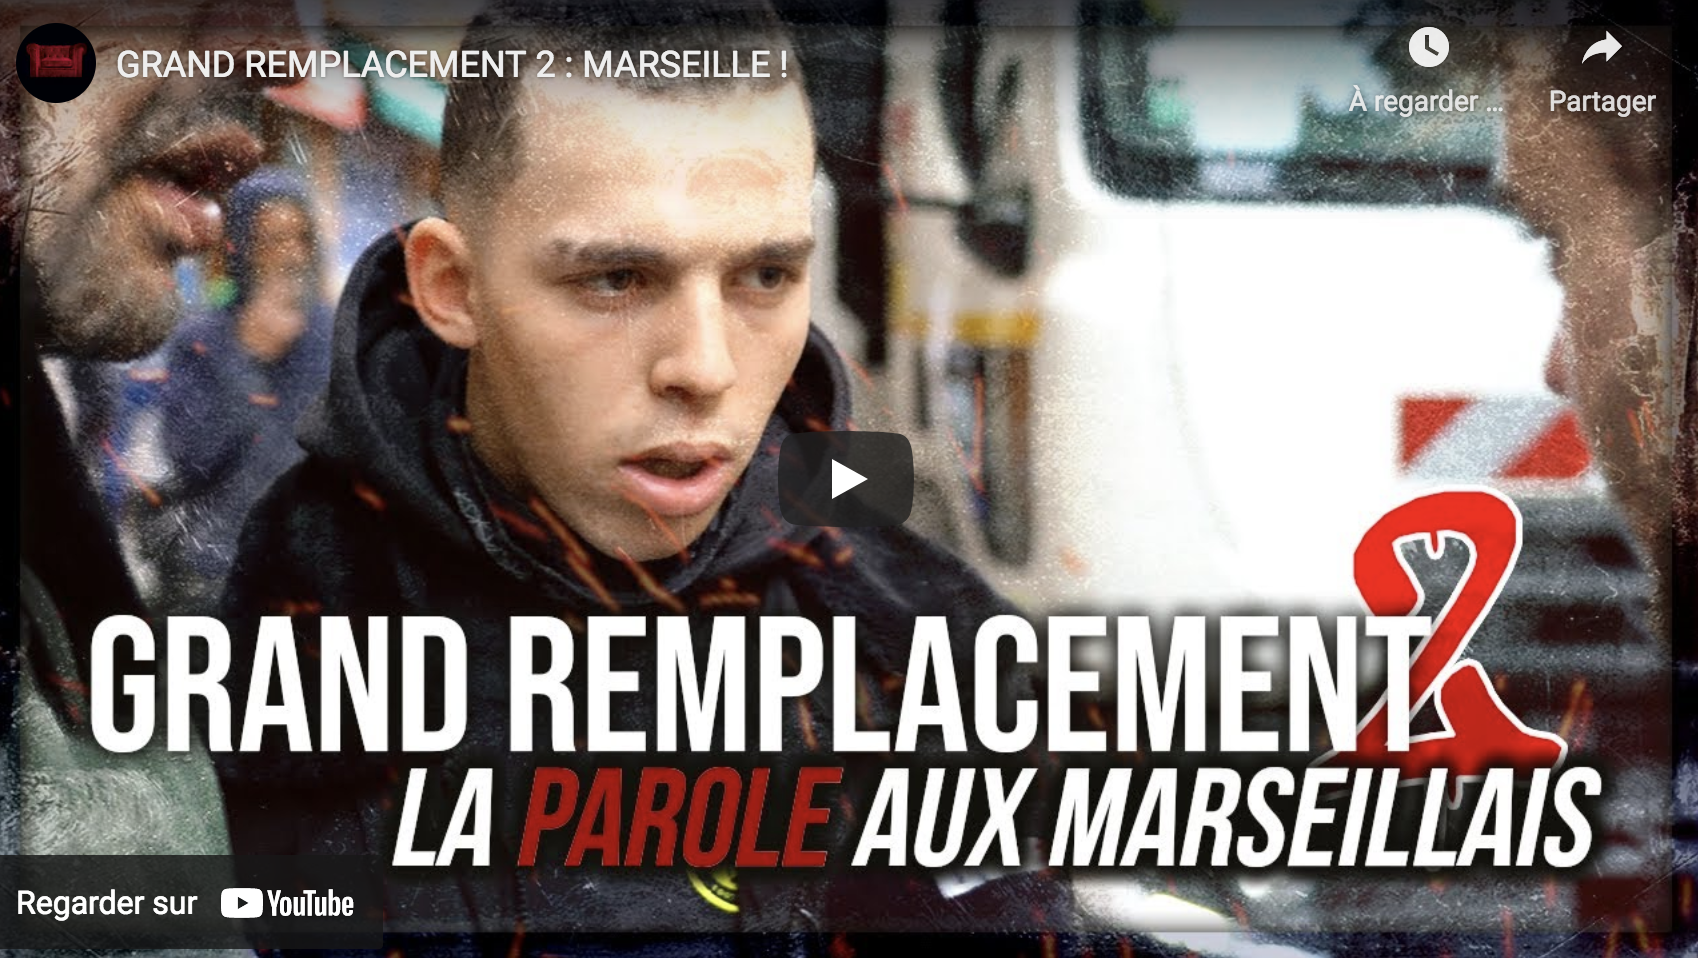 Grand Remplacement : ce qu’en pensent les “blédards” et autres immigrés de Marseille (VIDÉO)